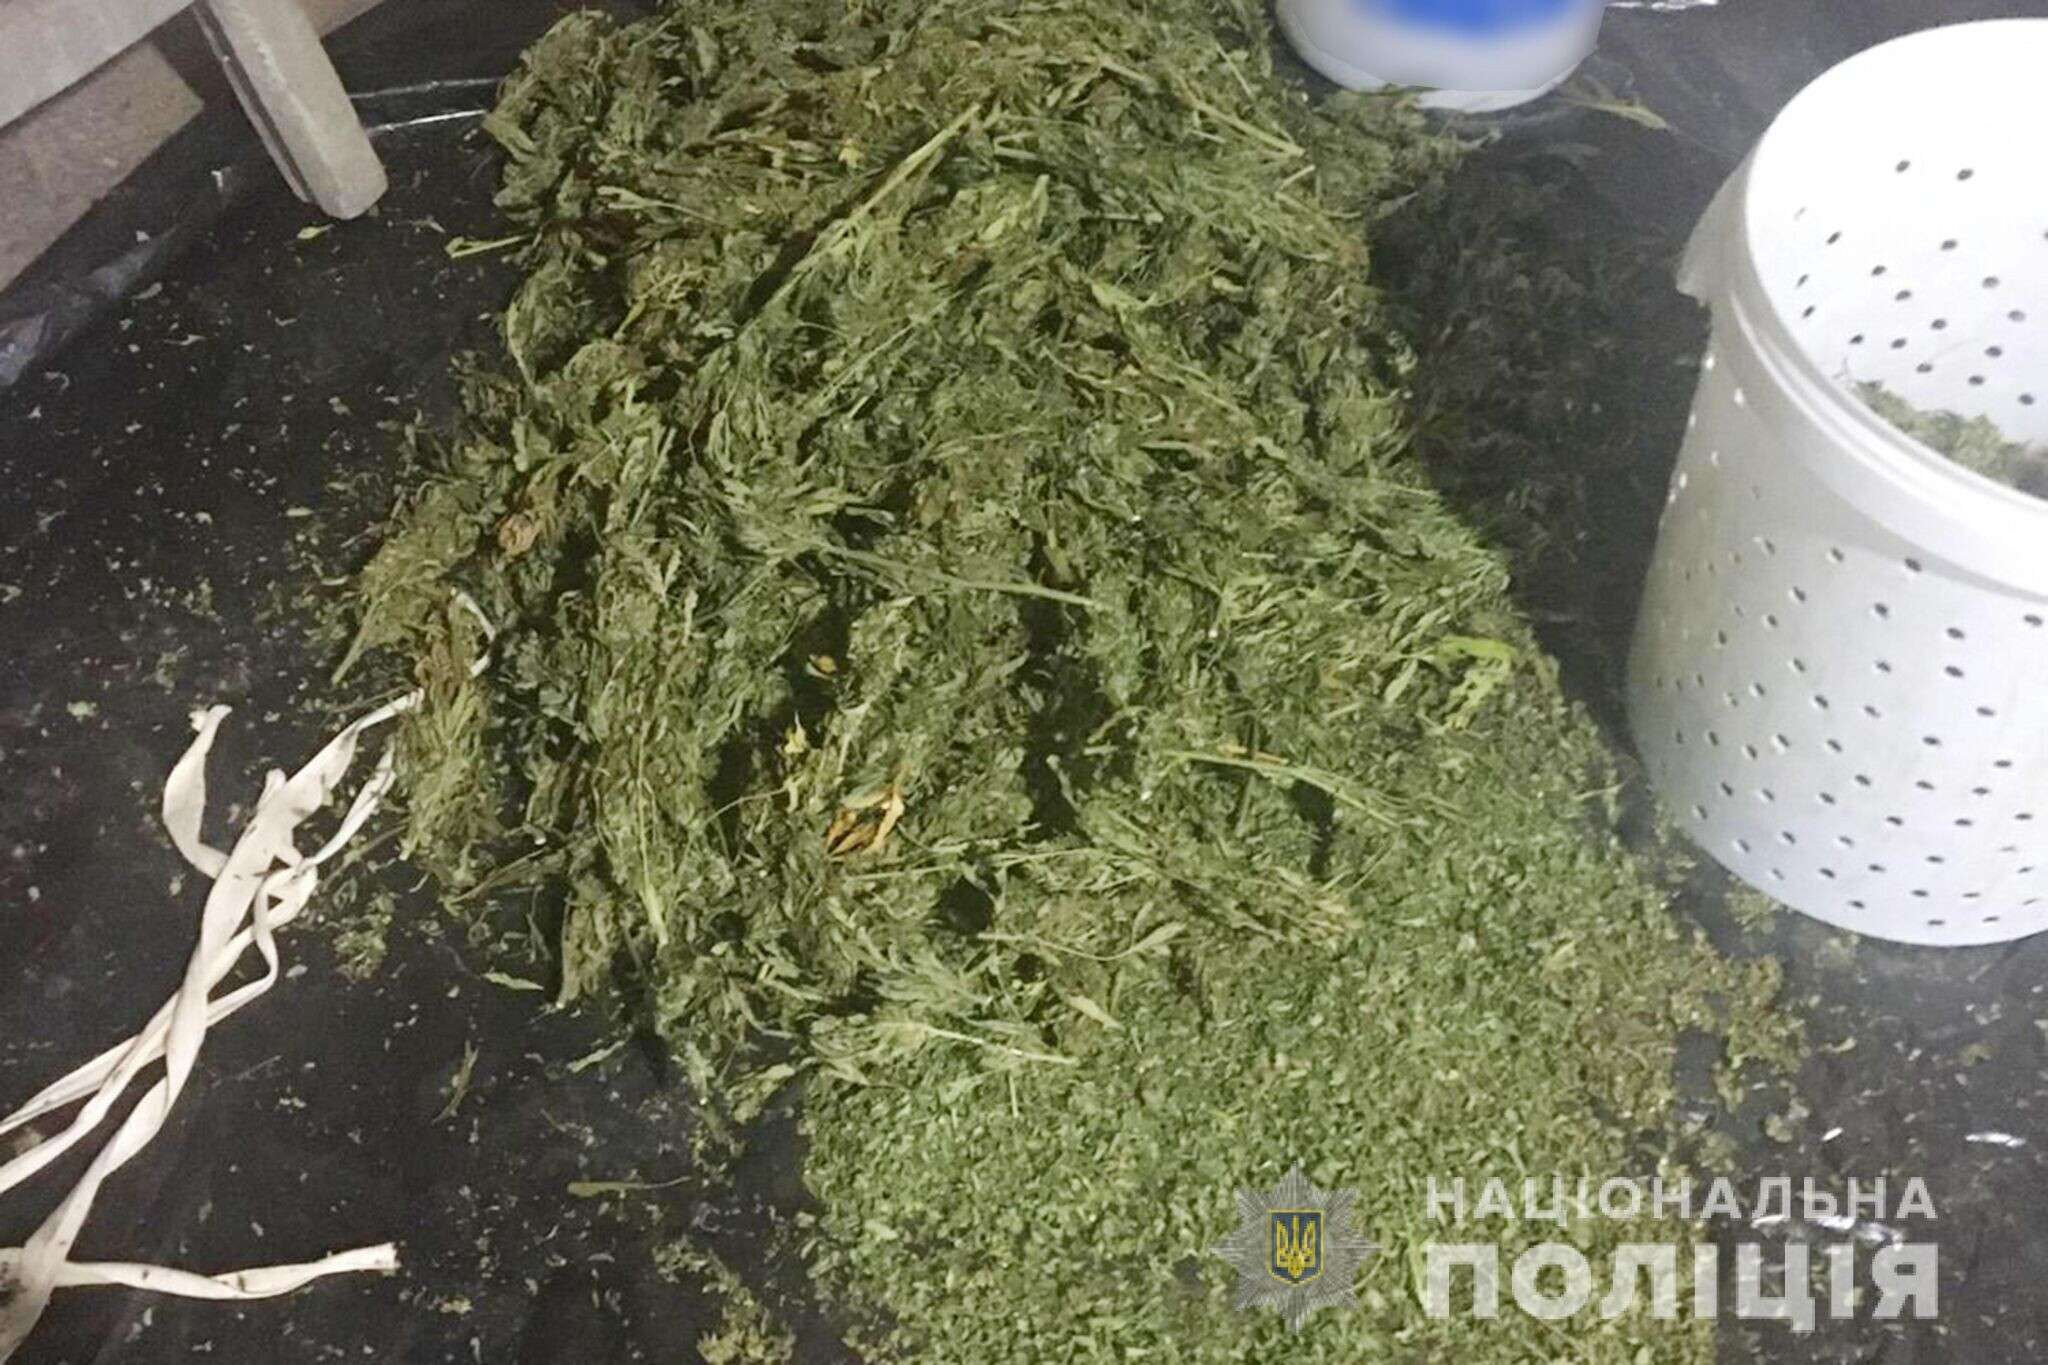 Хранение шишек марихуаны в браузере тор попытка соединения не удалась гирда